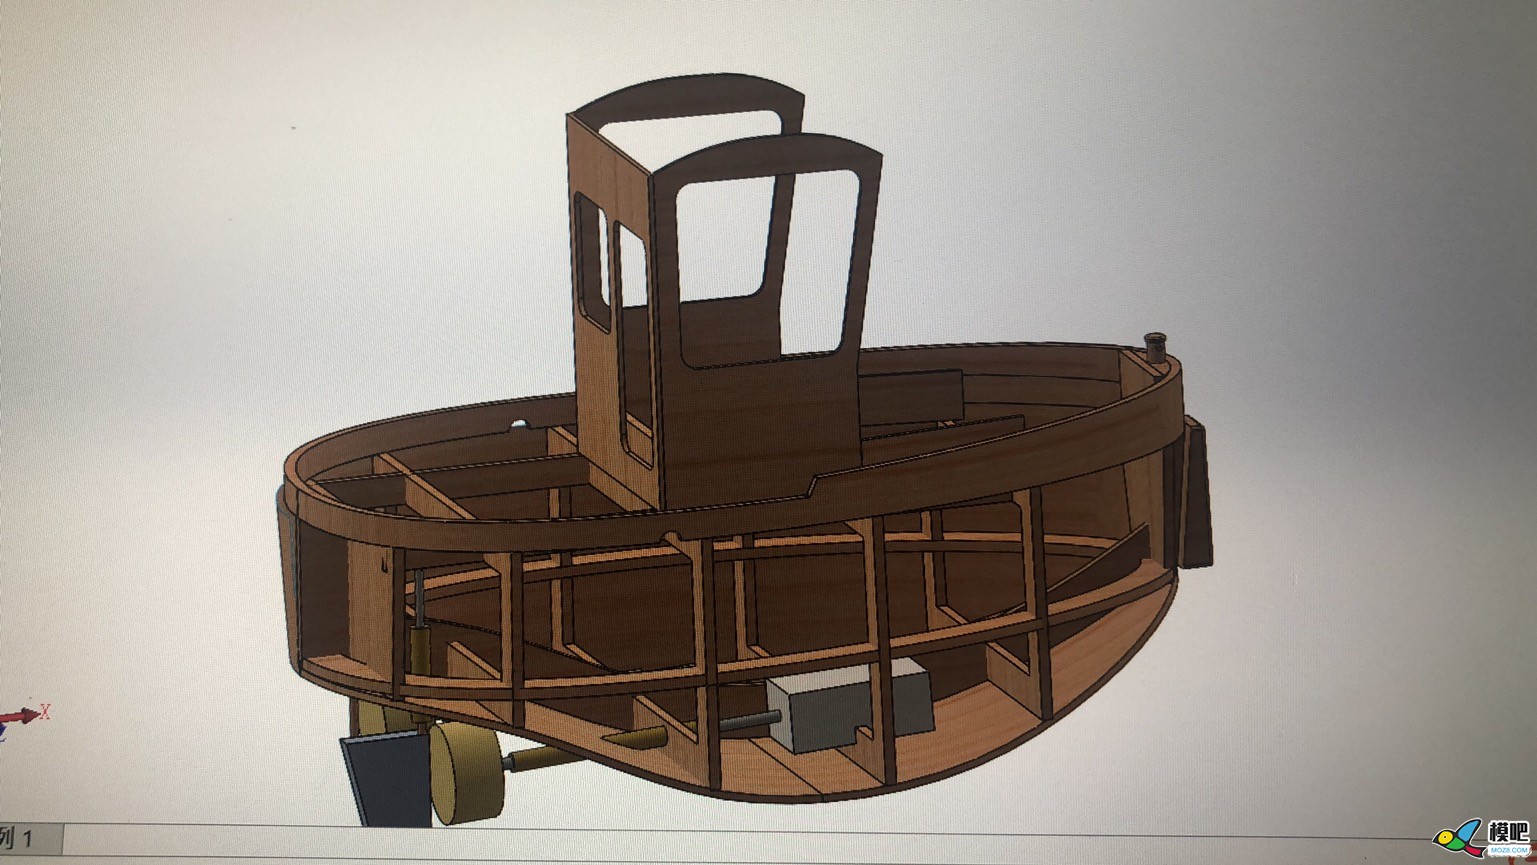 波曼小海狸小萌拖木质套材建模设计制作之让女票给钱造船 船模型,rc船模制作教程,船模制作 船身,船模套材,遥控器 作者:慢克来了 1558 